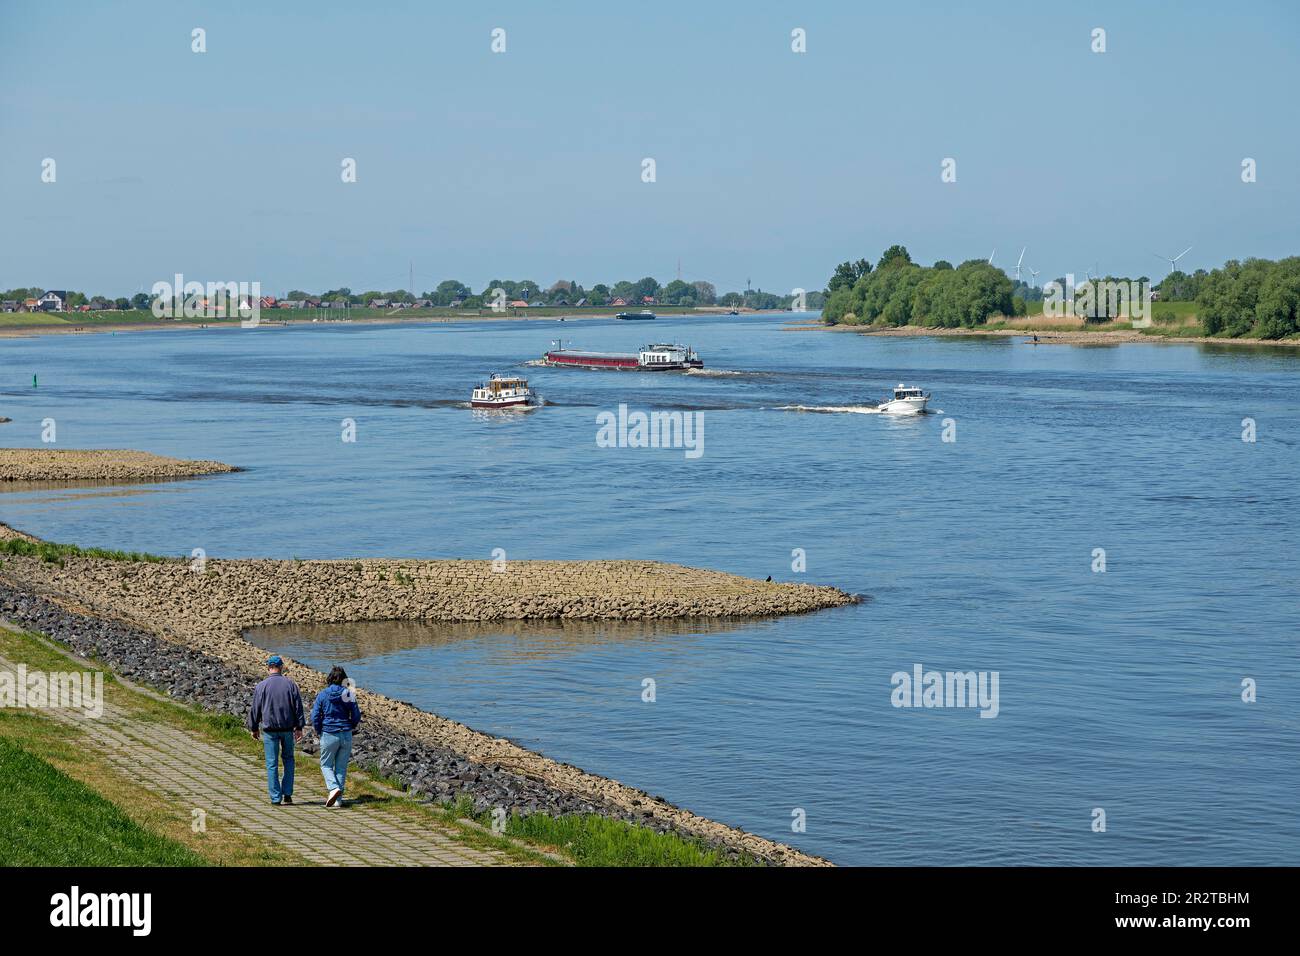 Personnes, bateaux, groin, rivière Elbe, Hoopte, Winsen (Luhe), Basse-Saxe, de l'autre côté de la rivière se trouve Zollenspieker, Hambourg, Allemagne Banque D'Images